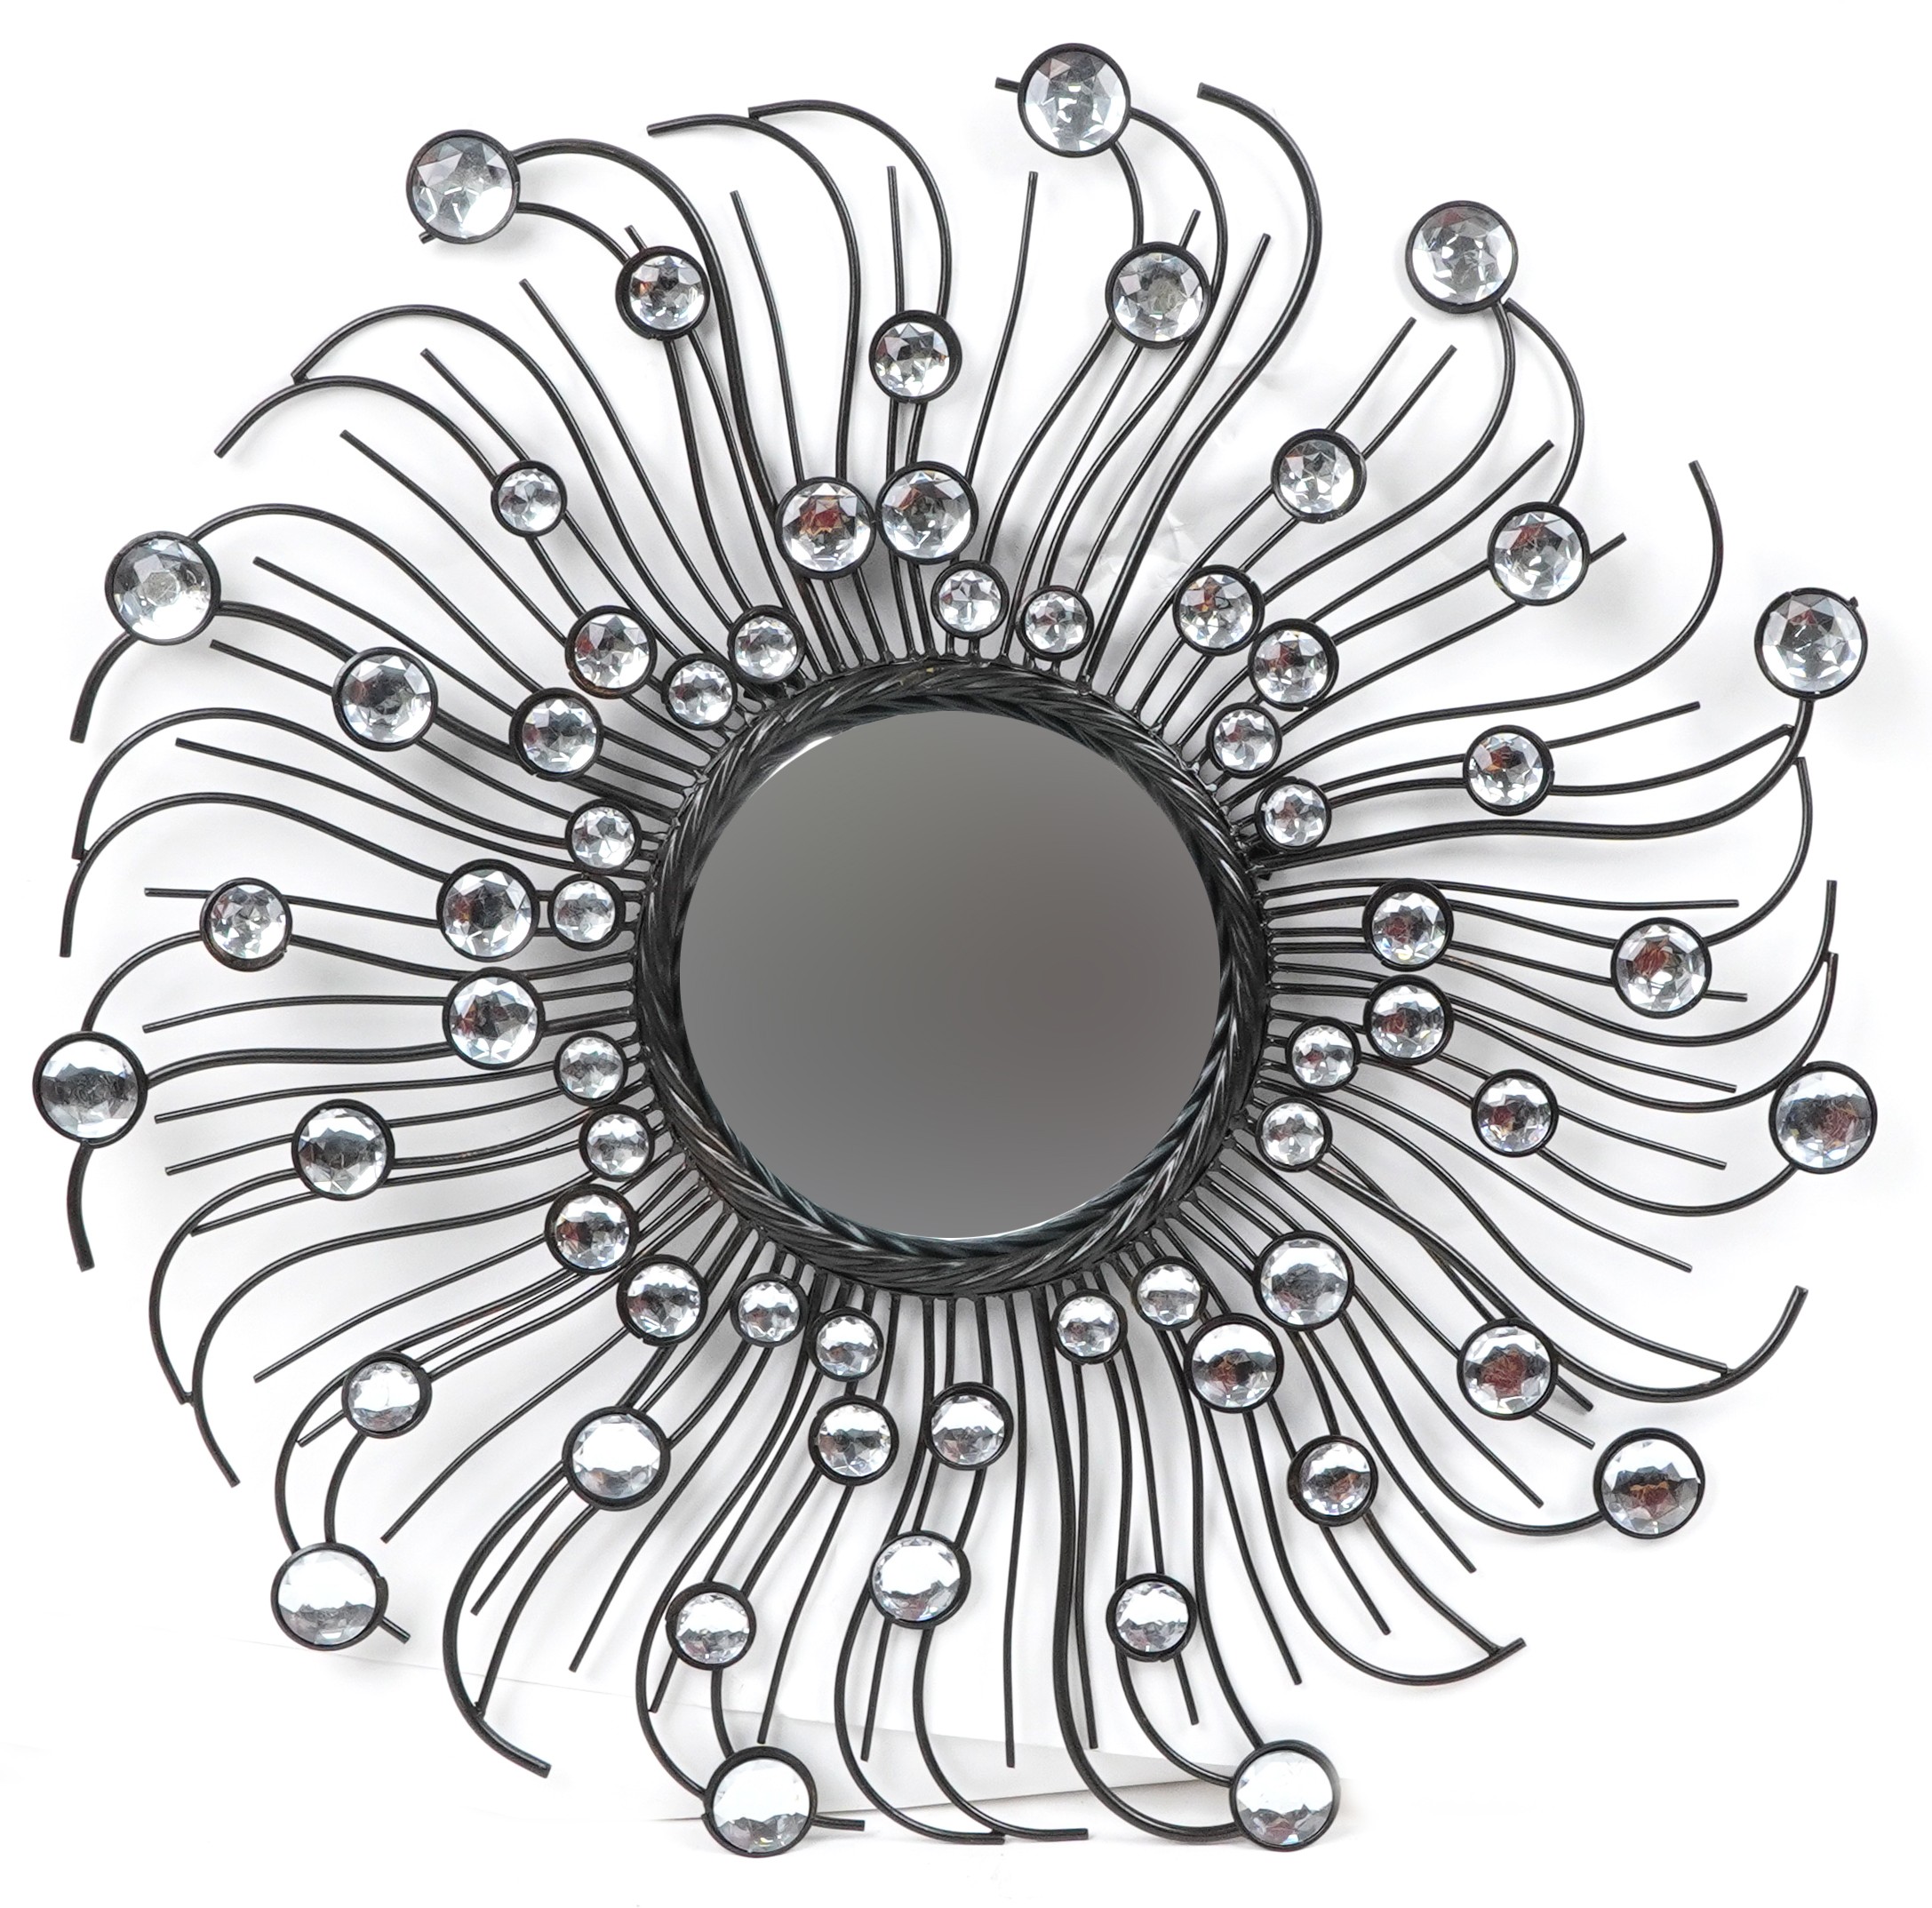 Stylish bronzed metal jewelled convex wall mirror, 75cm in diameter